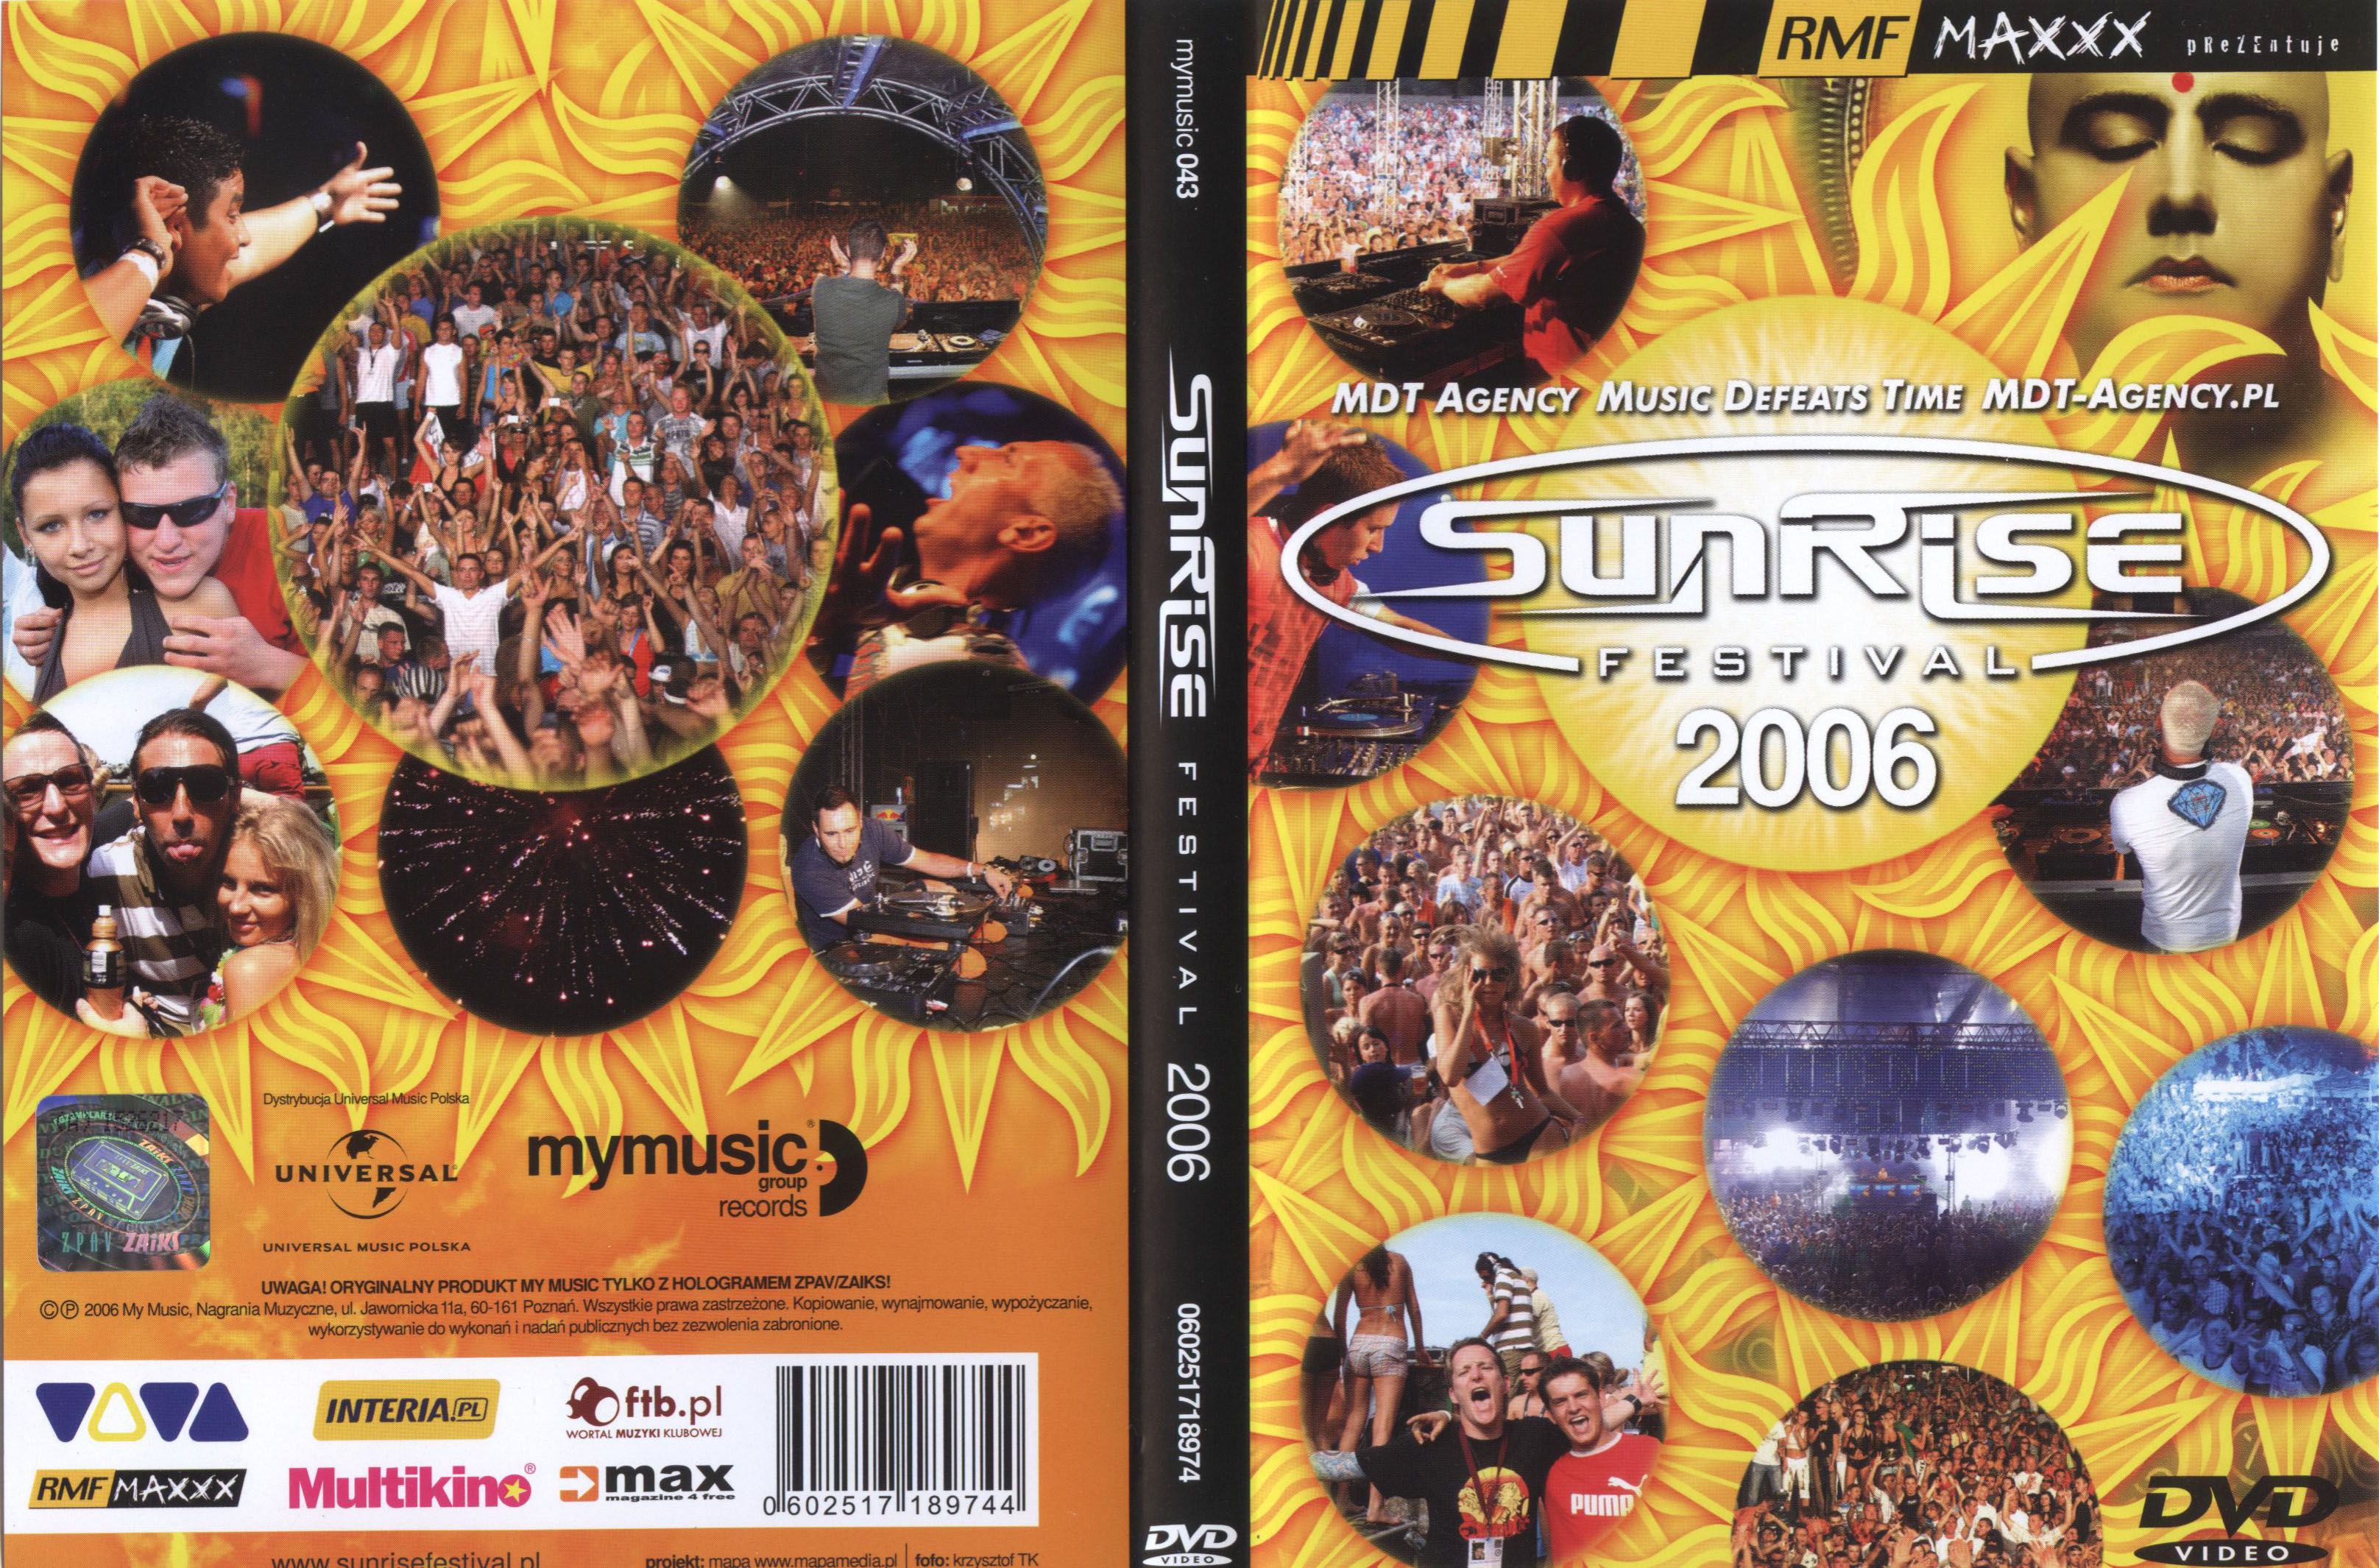 Sunrise Festival 2006 - Sunrise 000.jpg